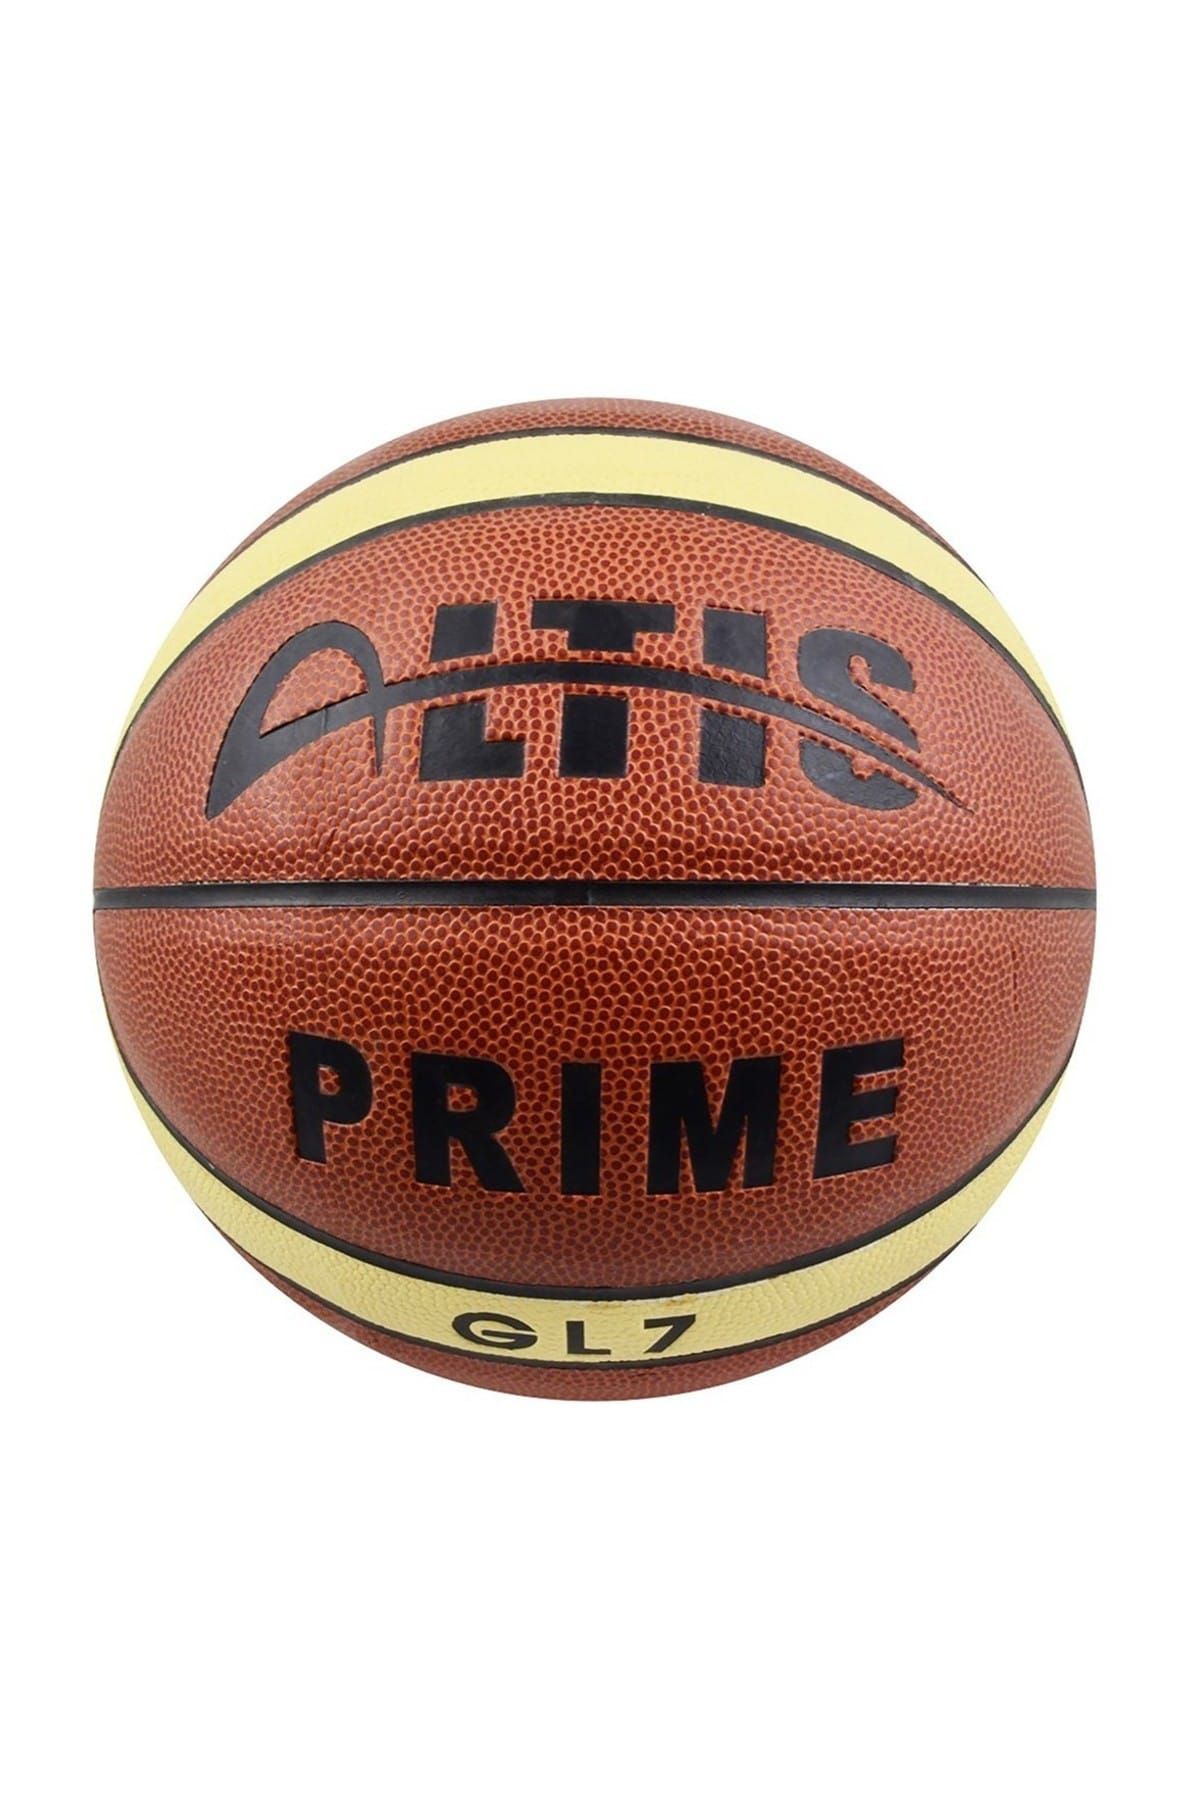 ALTIS Basketbol Topu No:7 (PRİME)